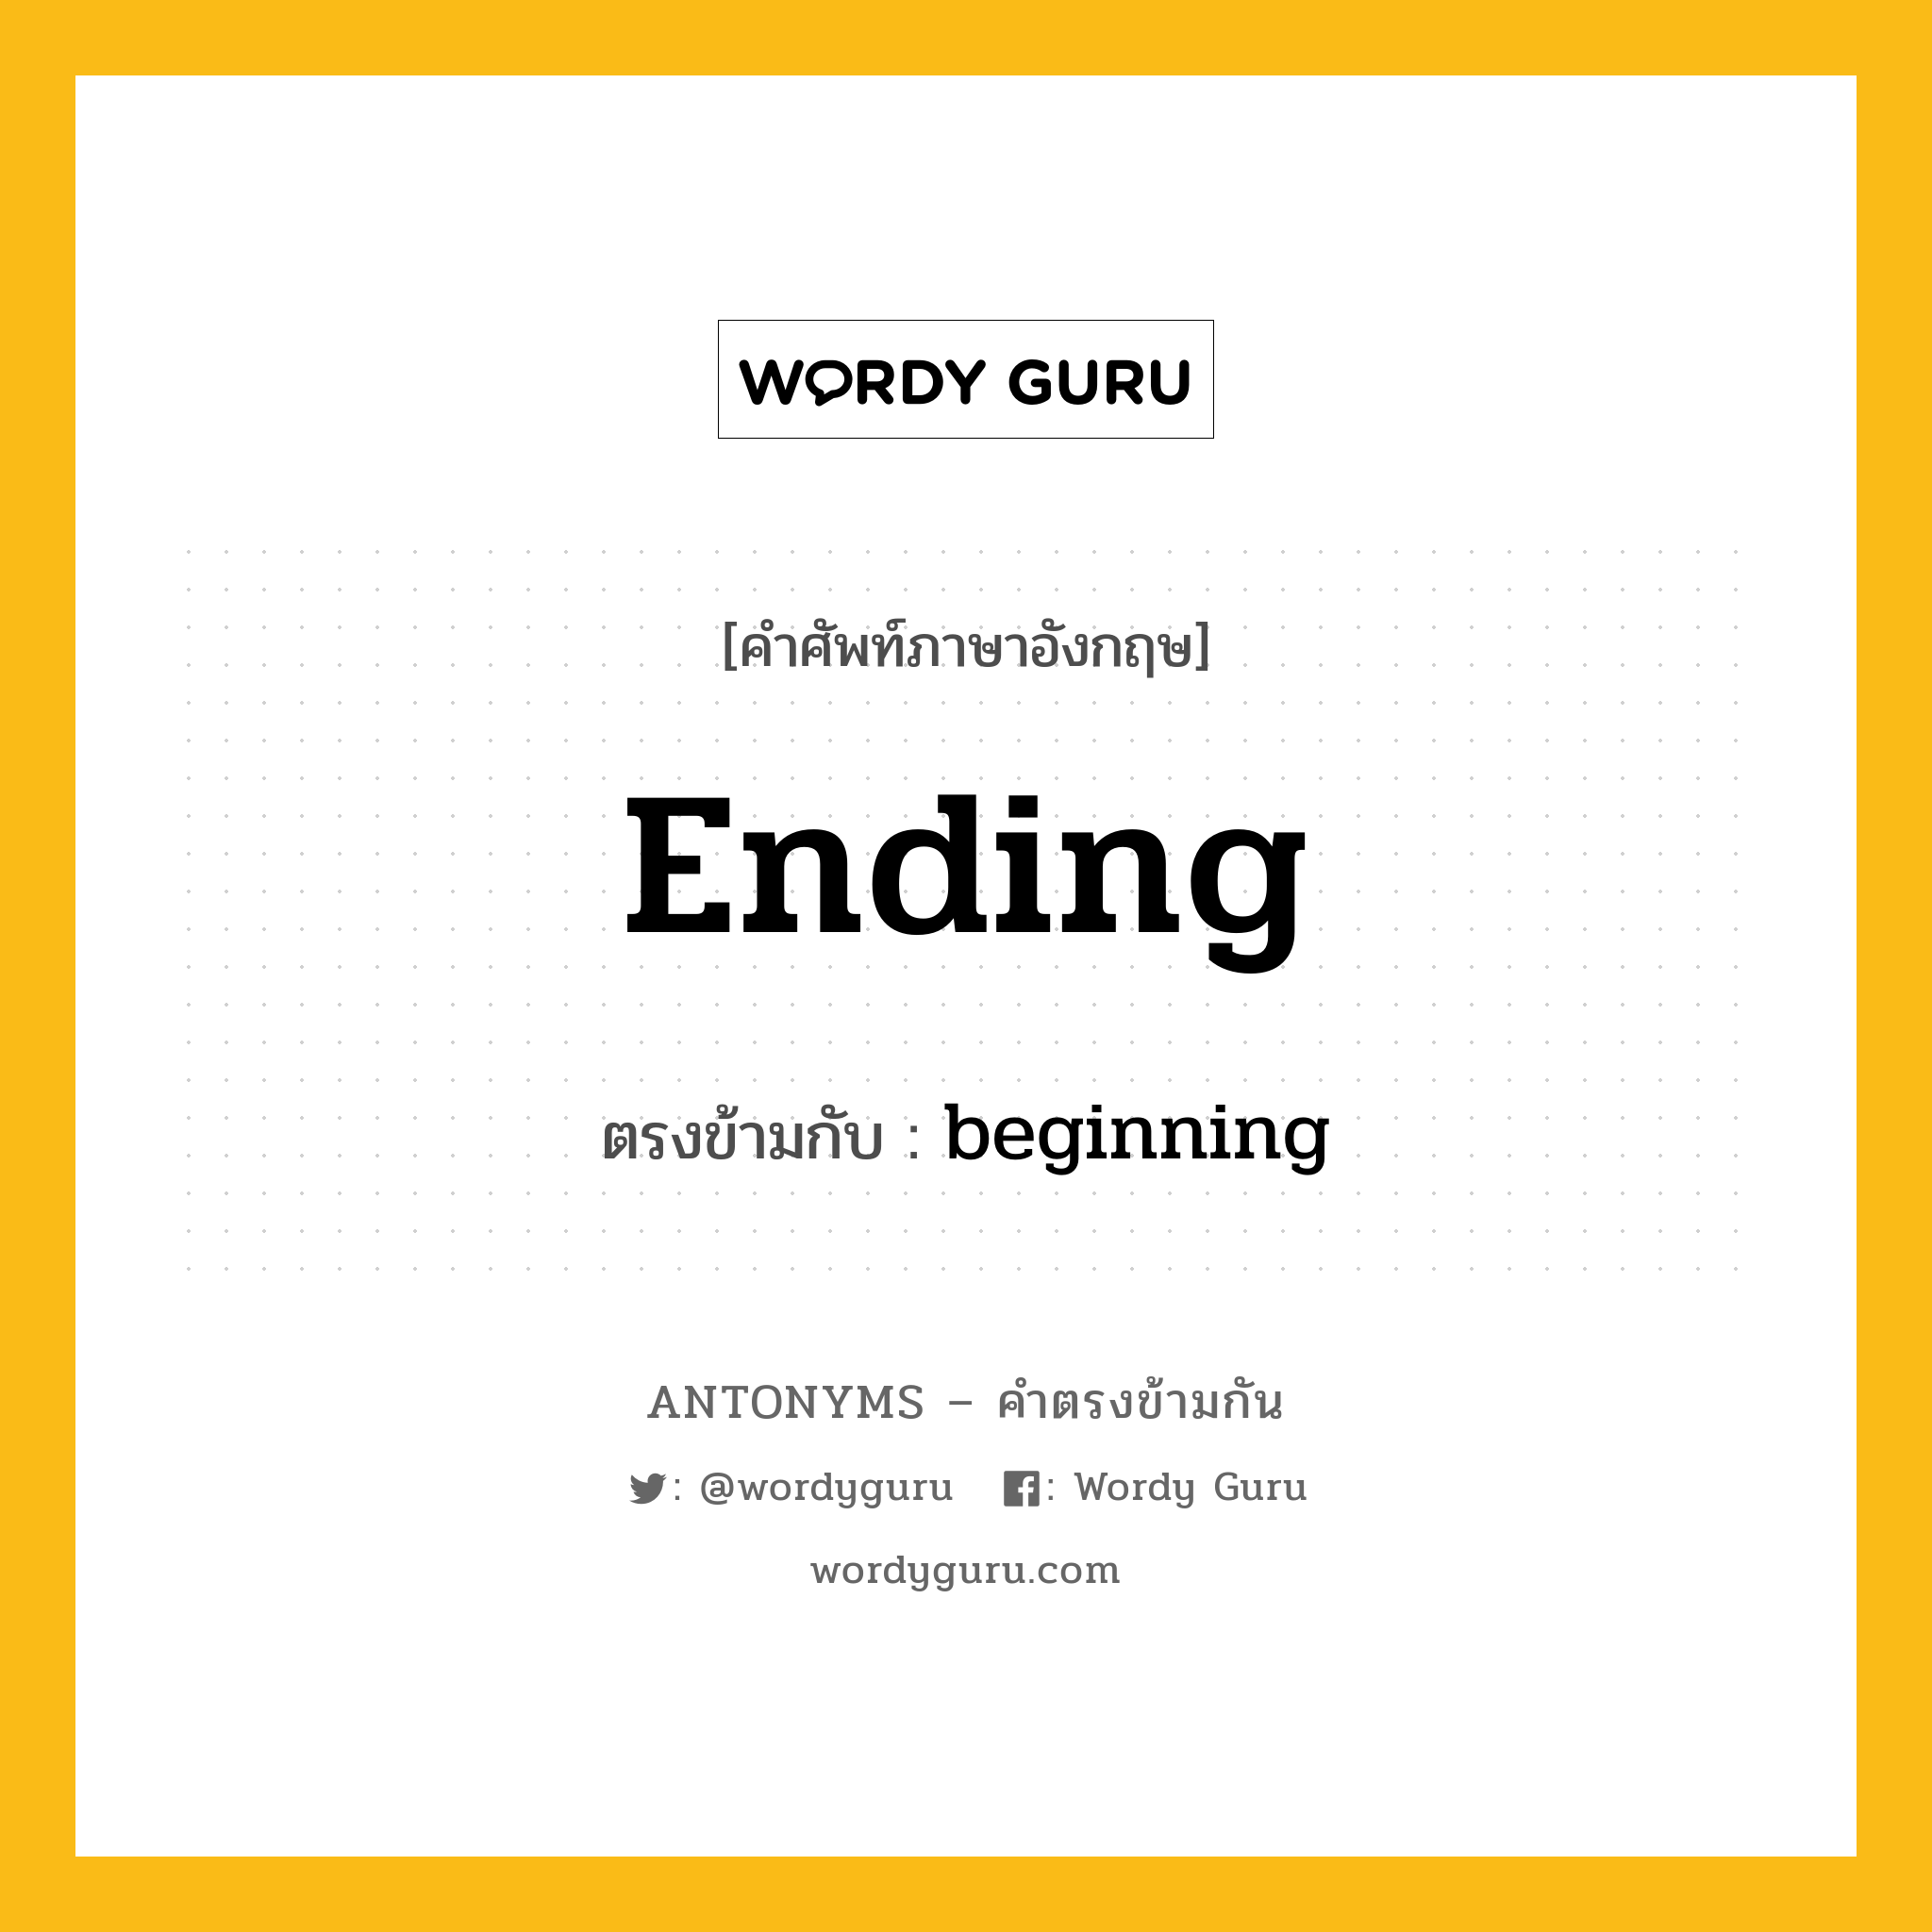 ending เป็นคำตรงข้ามกับคำไหนบ้าง?, คำศัพท์ภาษาอังกฤษ ending ตรงข้ามกับ beginning หมวด beginning